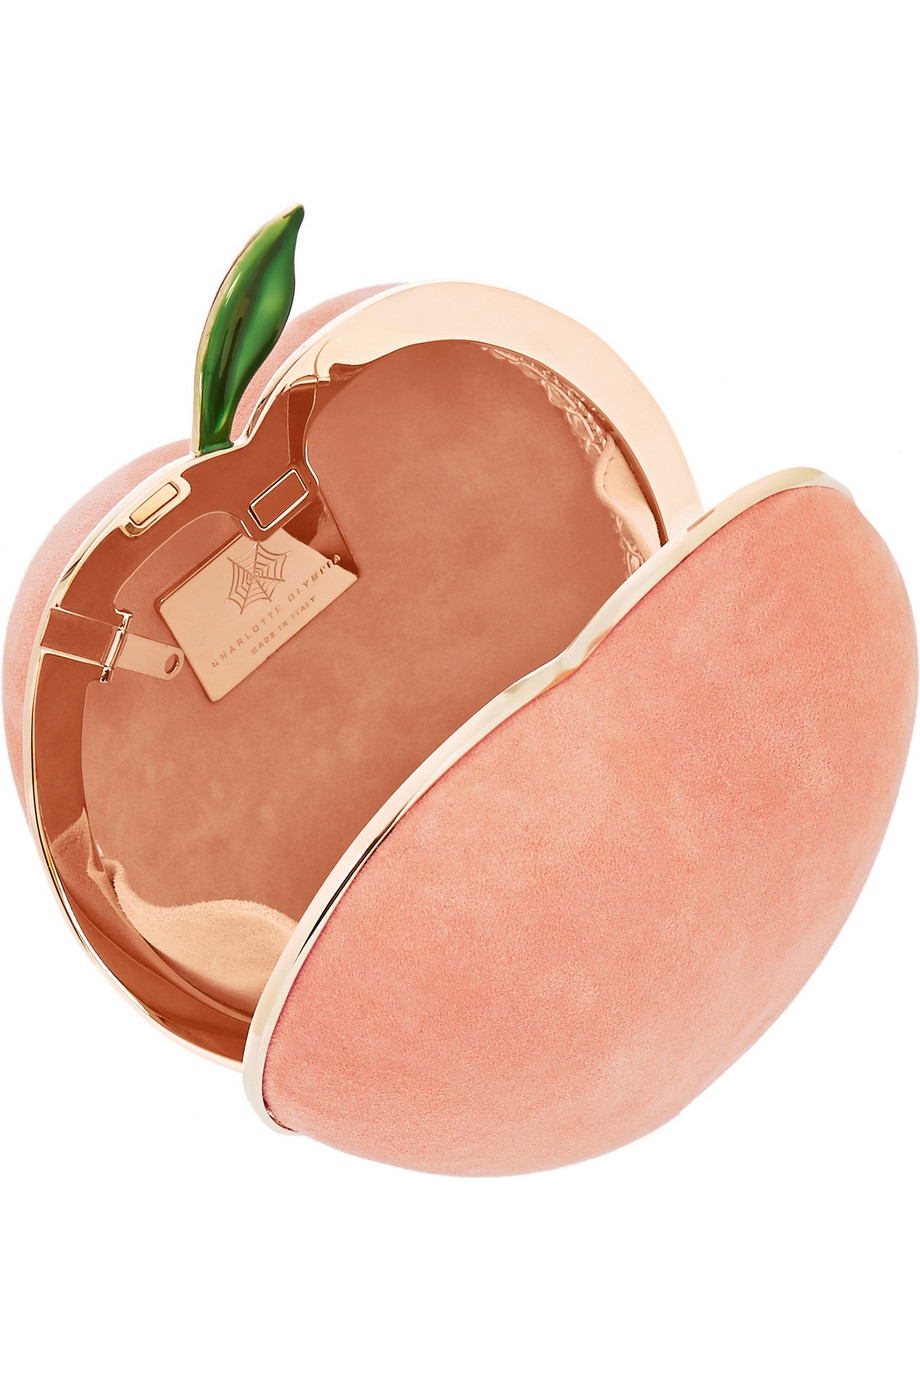 peach clutch